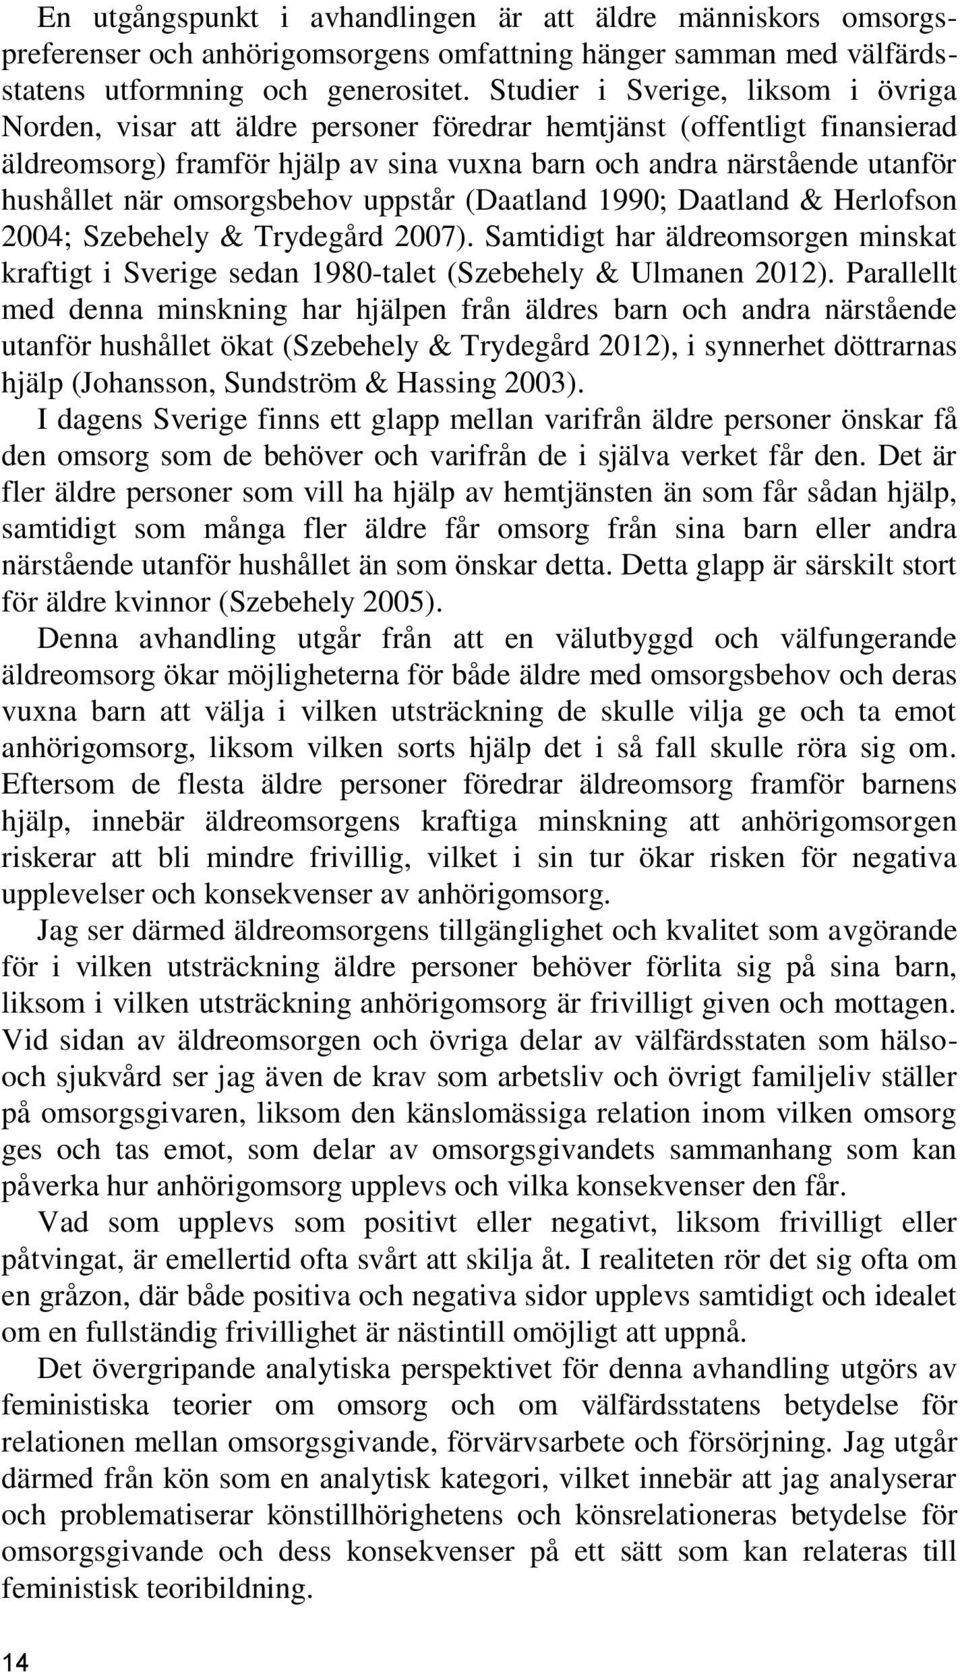 omsorgsbehov uppstår (Daatland 1990; Daatland & Herlofson 2004; Szebehely & Trydegård 2007). Samtidigt har äldreomsorgen minskat kraftigt i Sverige sedan 1980-talet (Szebehely & Ulmanen 2012).